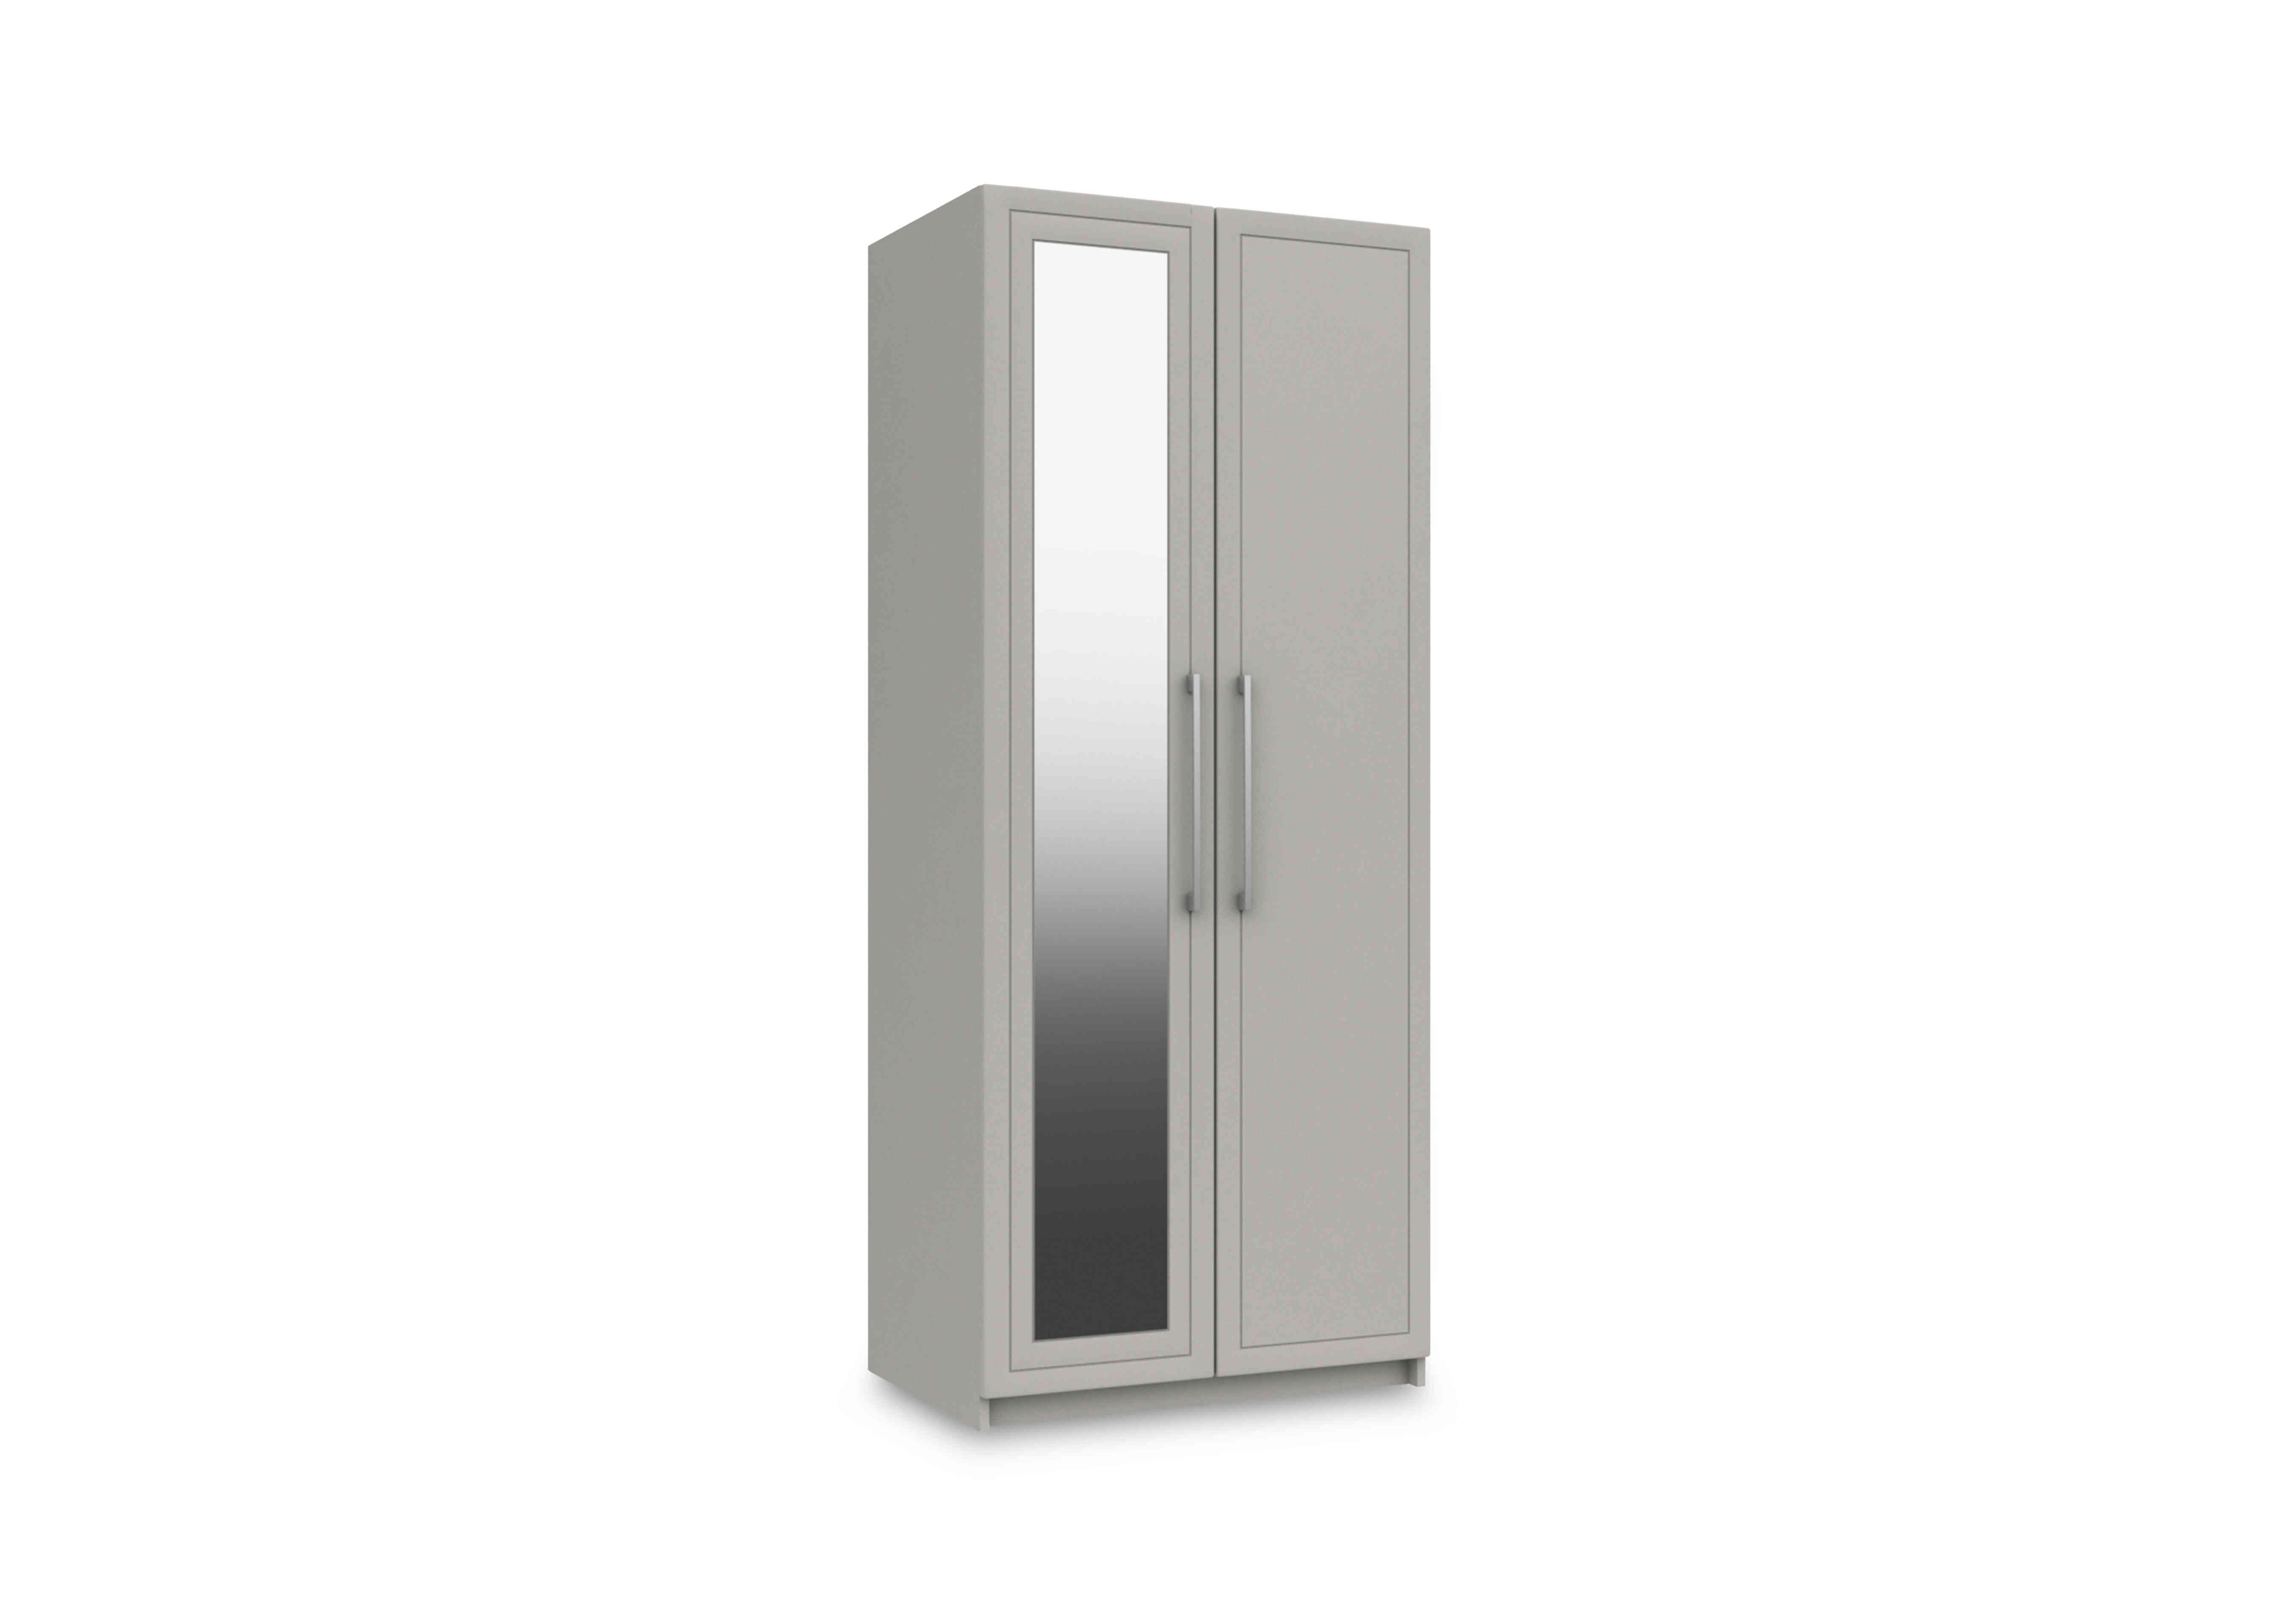 Bexley 2 Door Wardrobe with Mirror Door in Light Grey Gloss on Furniture Village